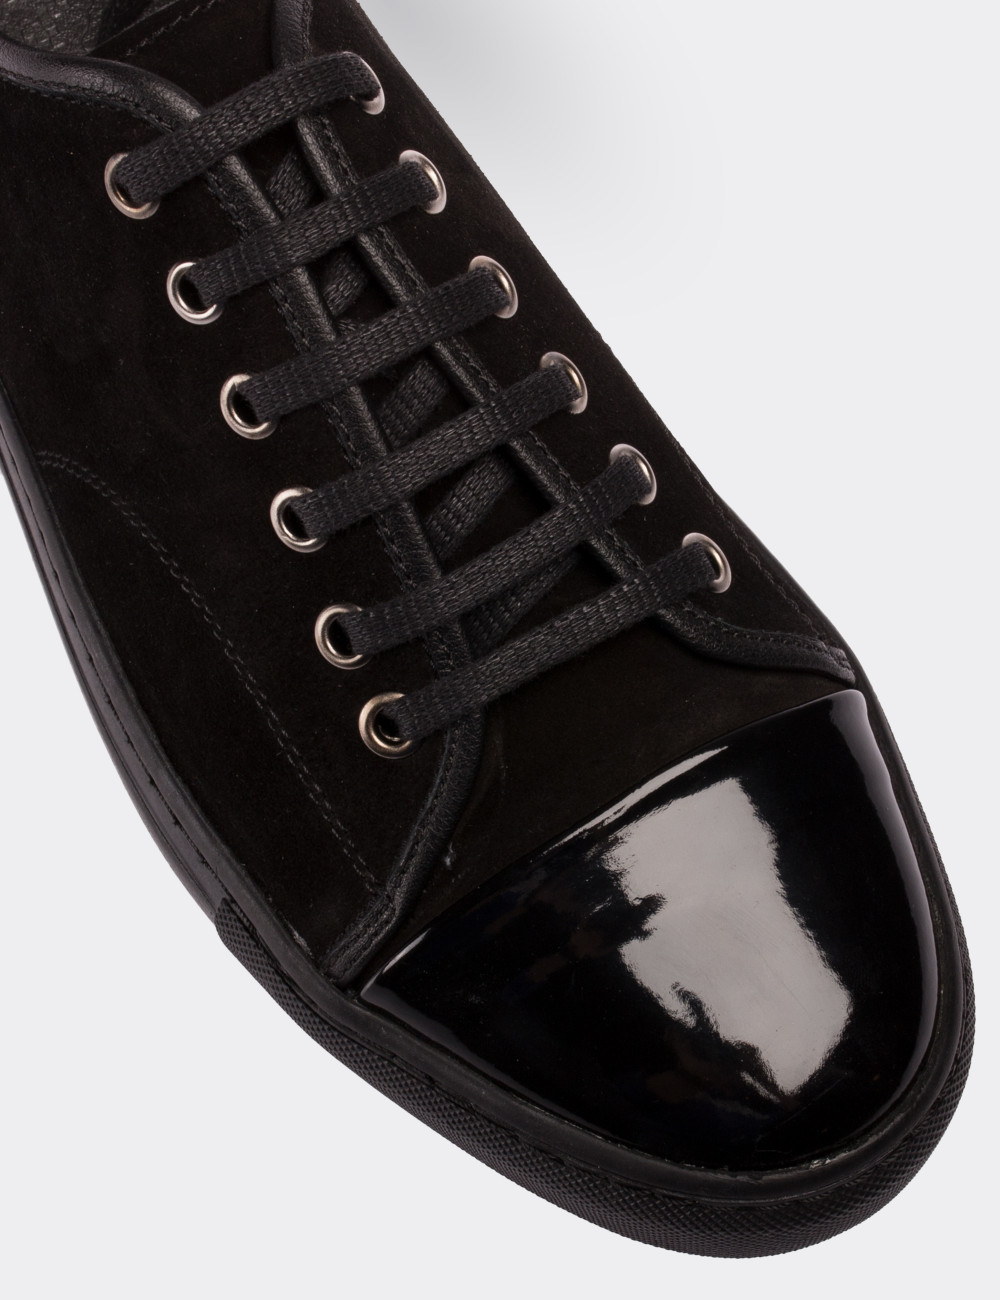 Hakiki Süet Siyah Sneaker Erkek Ayakkabı - 01683MSYHC01